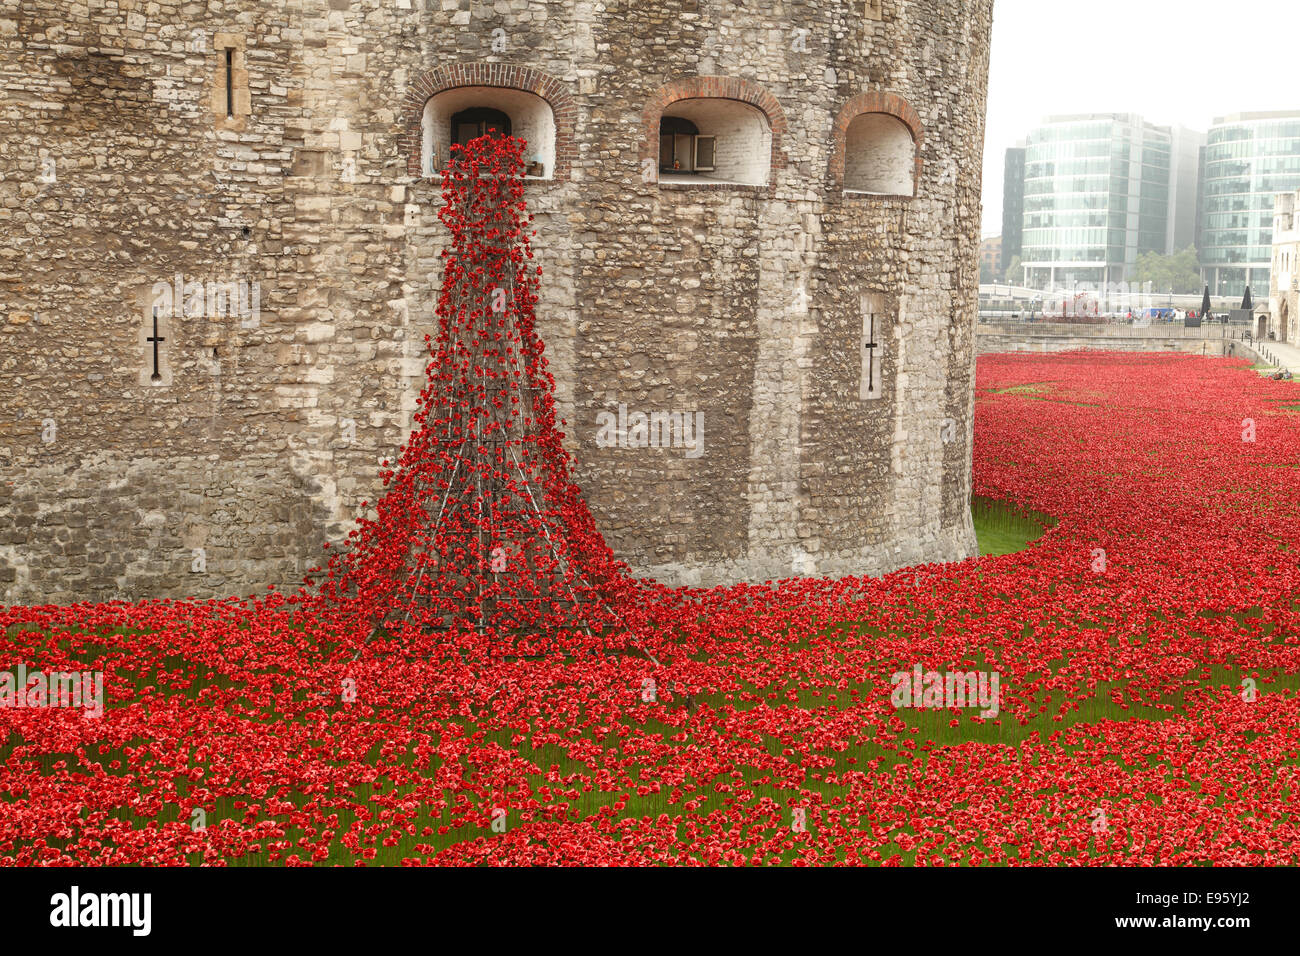 Arrasaron tierras y mares de sangre de color rojo en el Tower Bridge de Londres Foto de stock